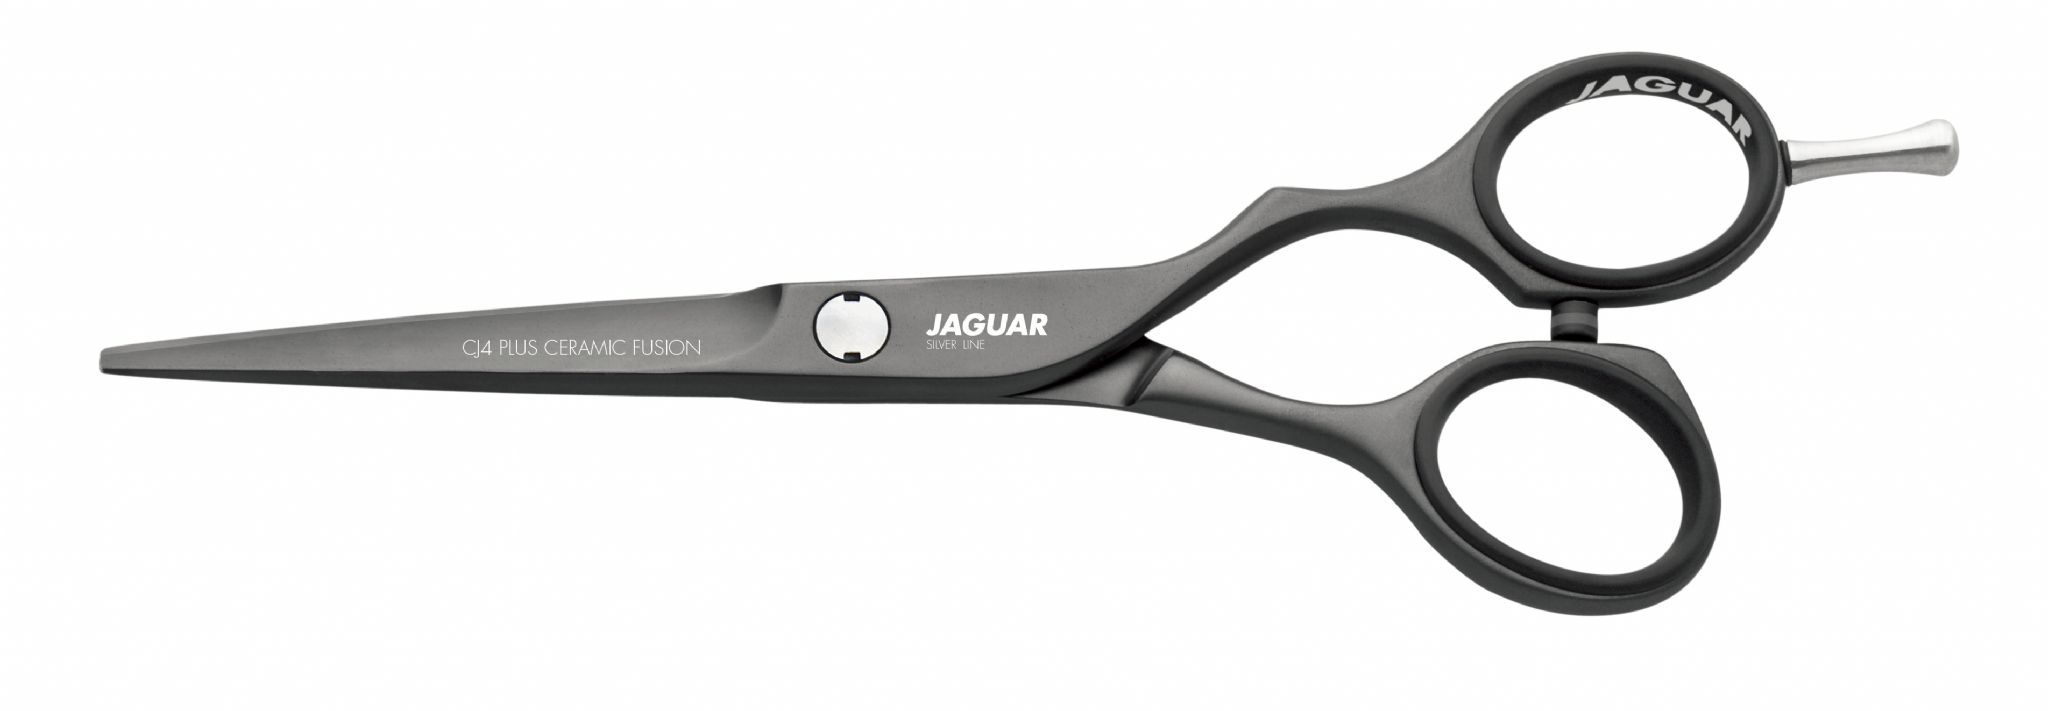 Kéo Cắt Jaguar Silver Line CJ4 Plus Ceramic Fusion 5.5